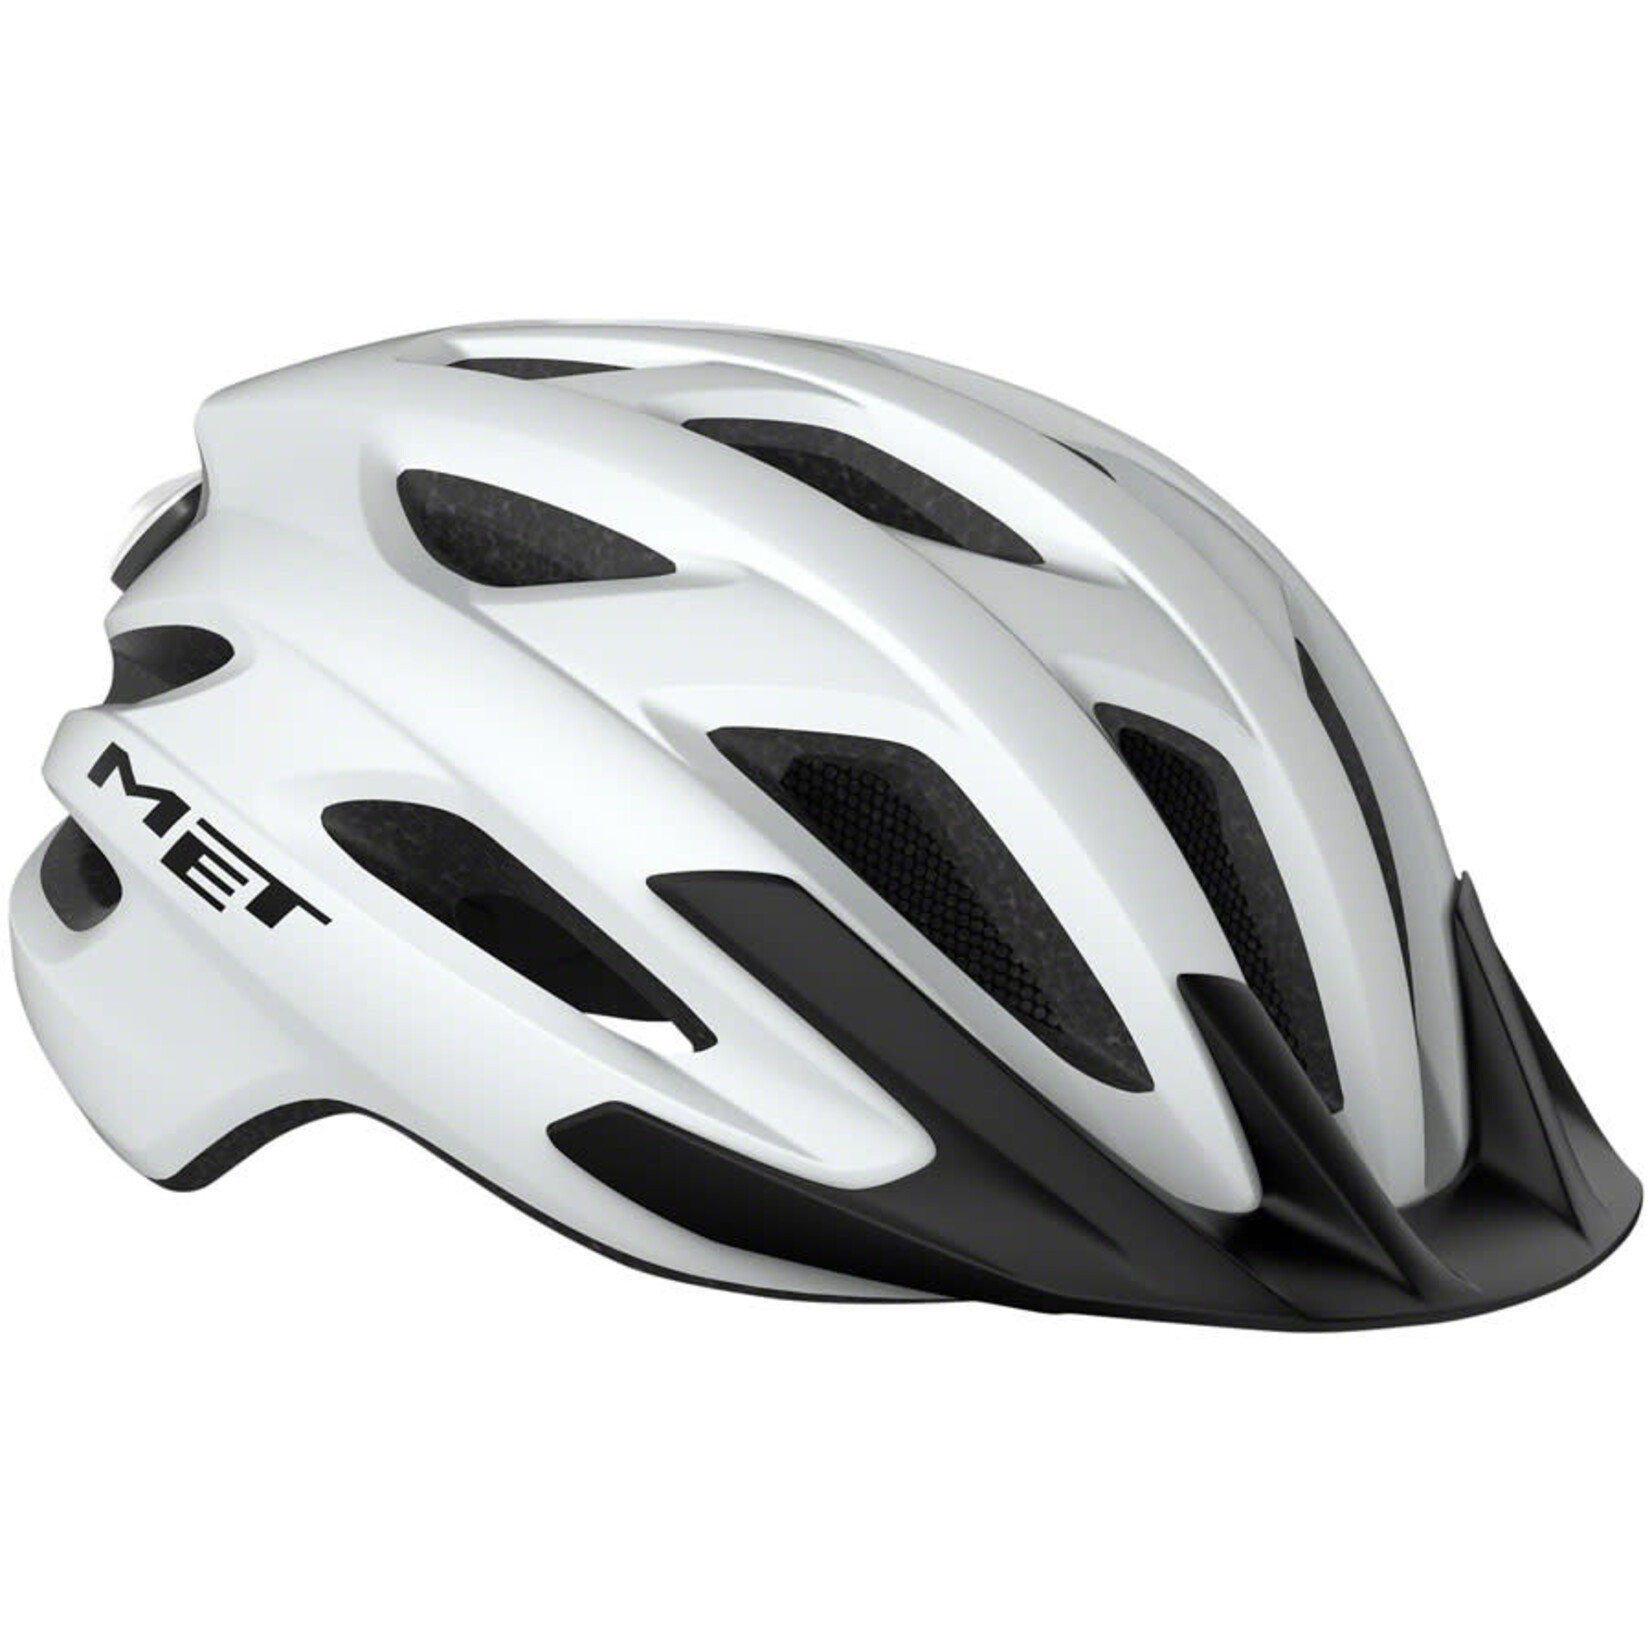 MET Helmets MET Crossover MIPS Helmet - White, One Size